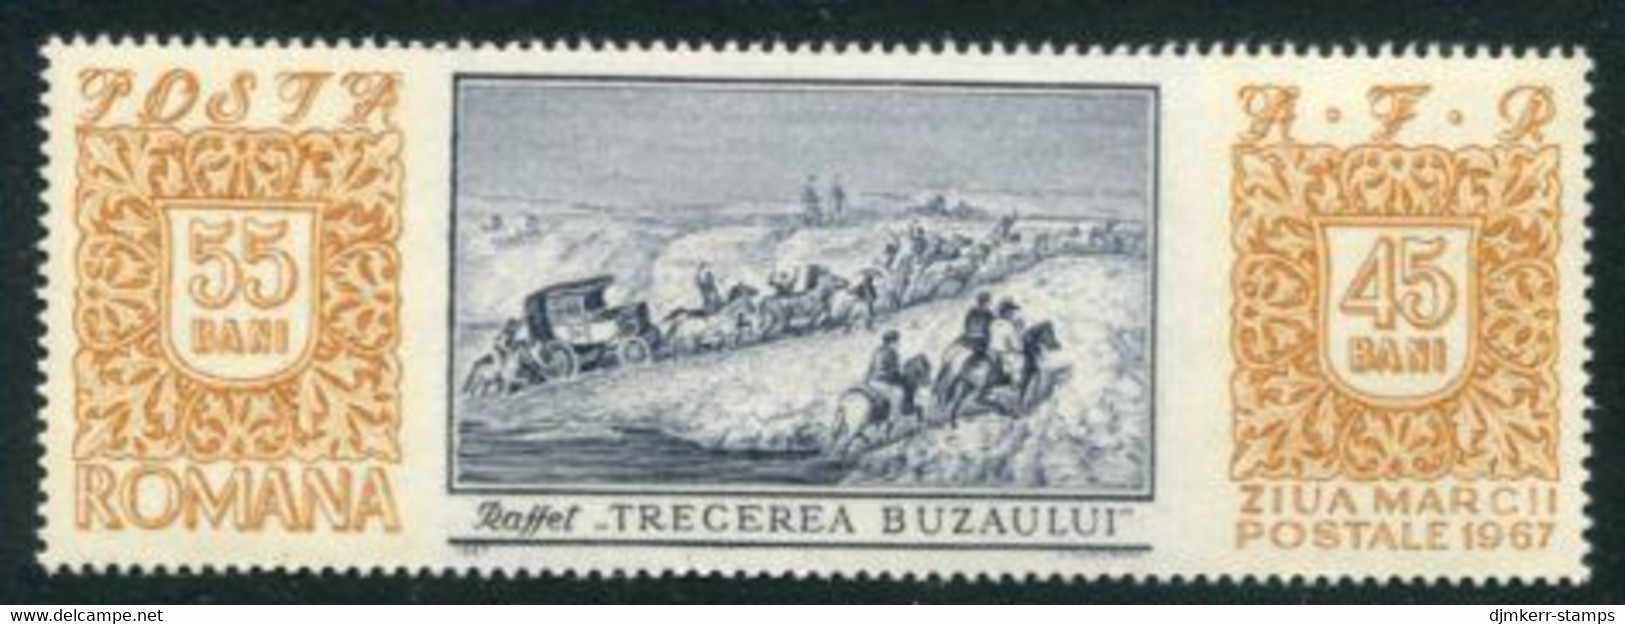 ROMANIA 1967 Stamp Day  MNH / **.  Michel 2634 - Ungebraucht